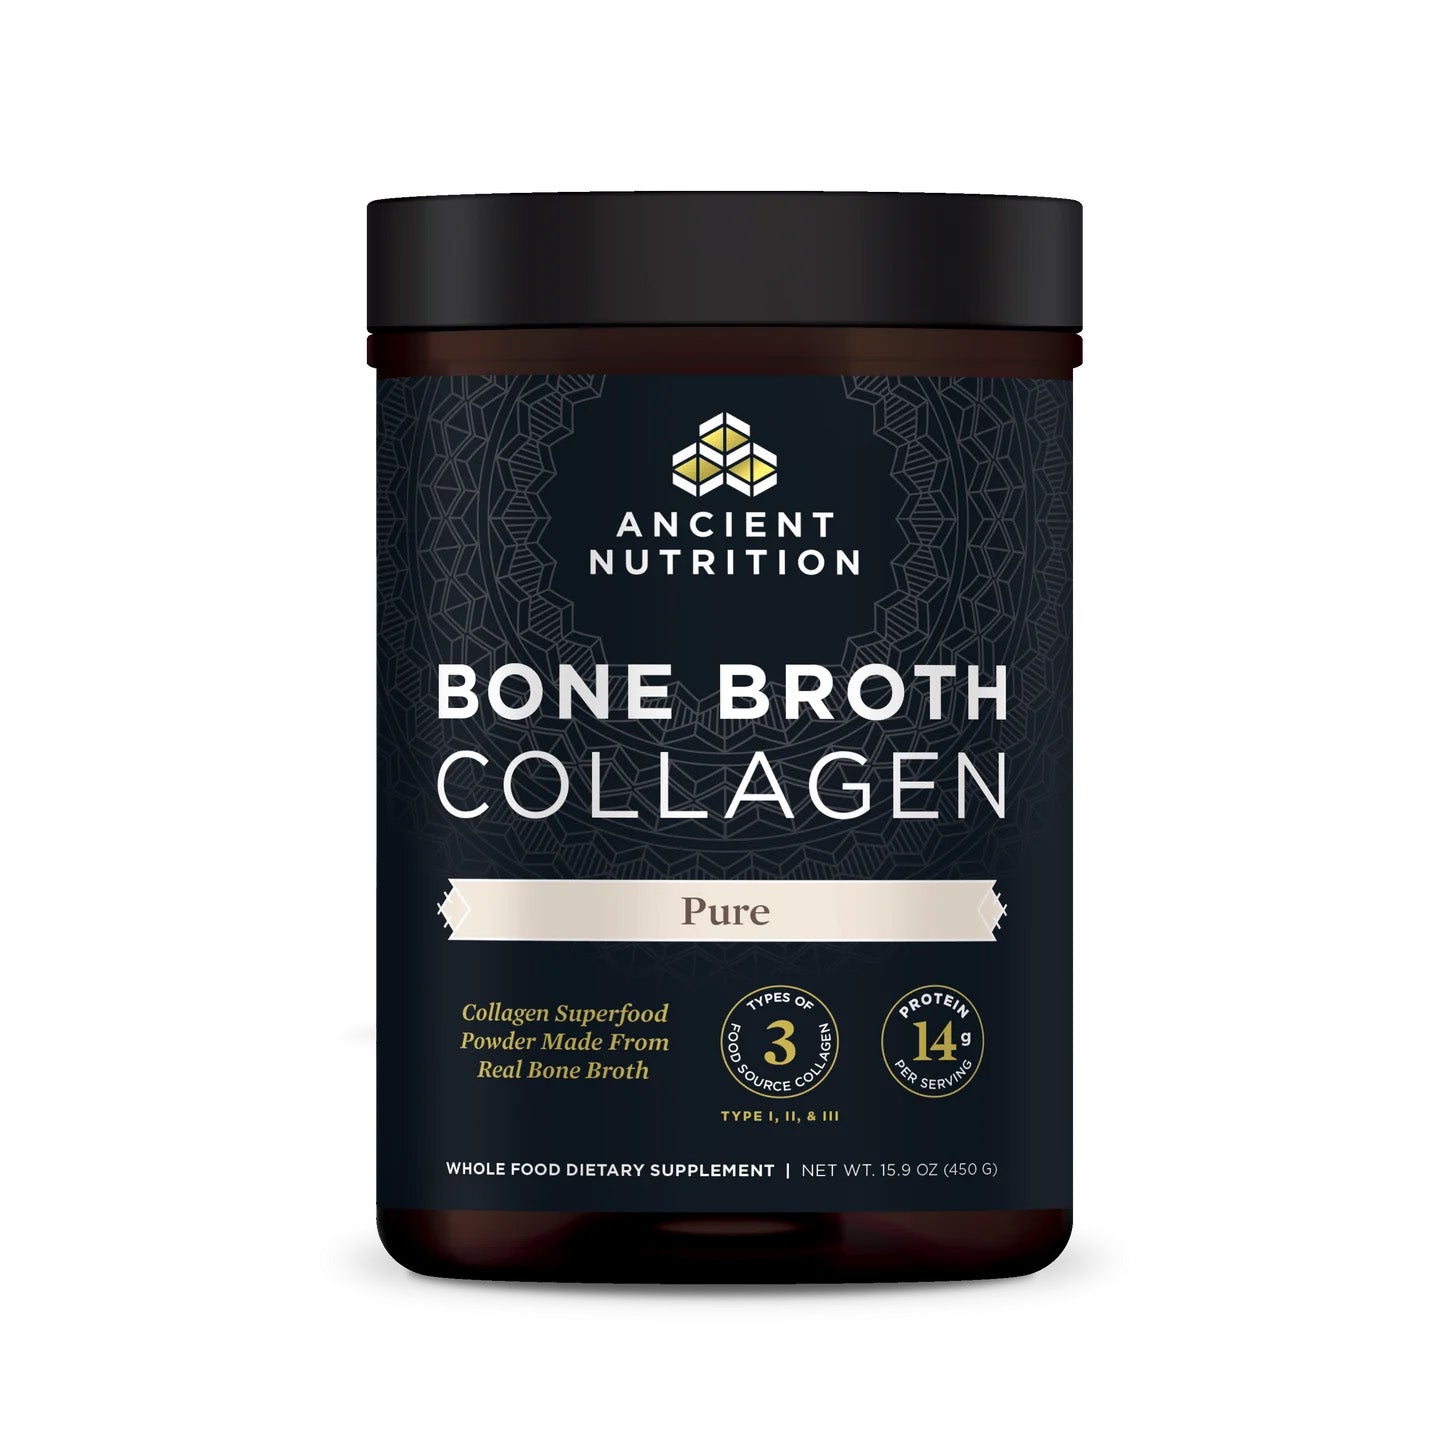 Ancient Nutrition Bone Broth Collagen Pure: Refuerza tus Huesos y Articulaciones | ProHealth Shop [Panamá]